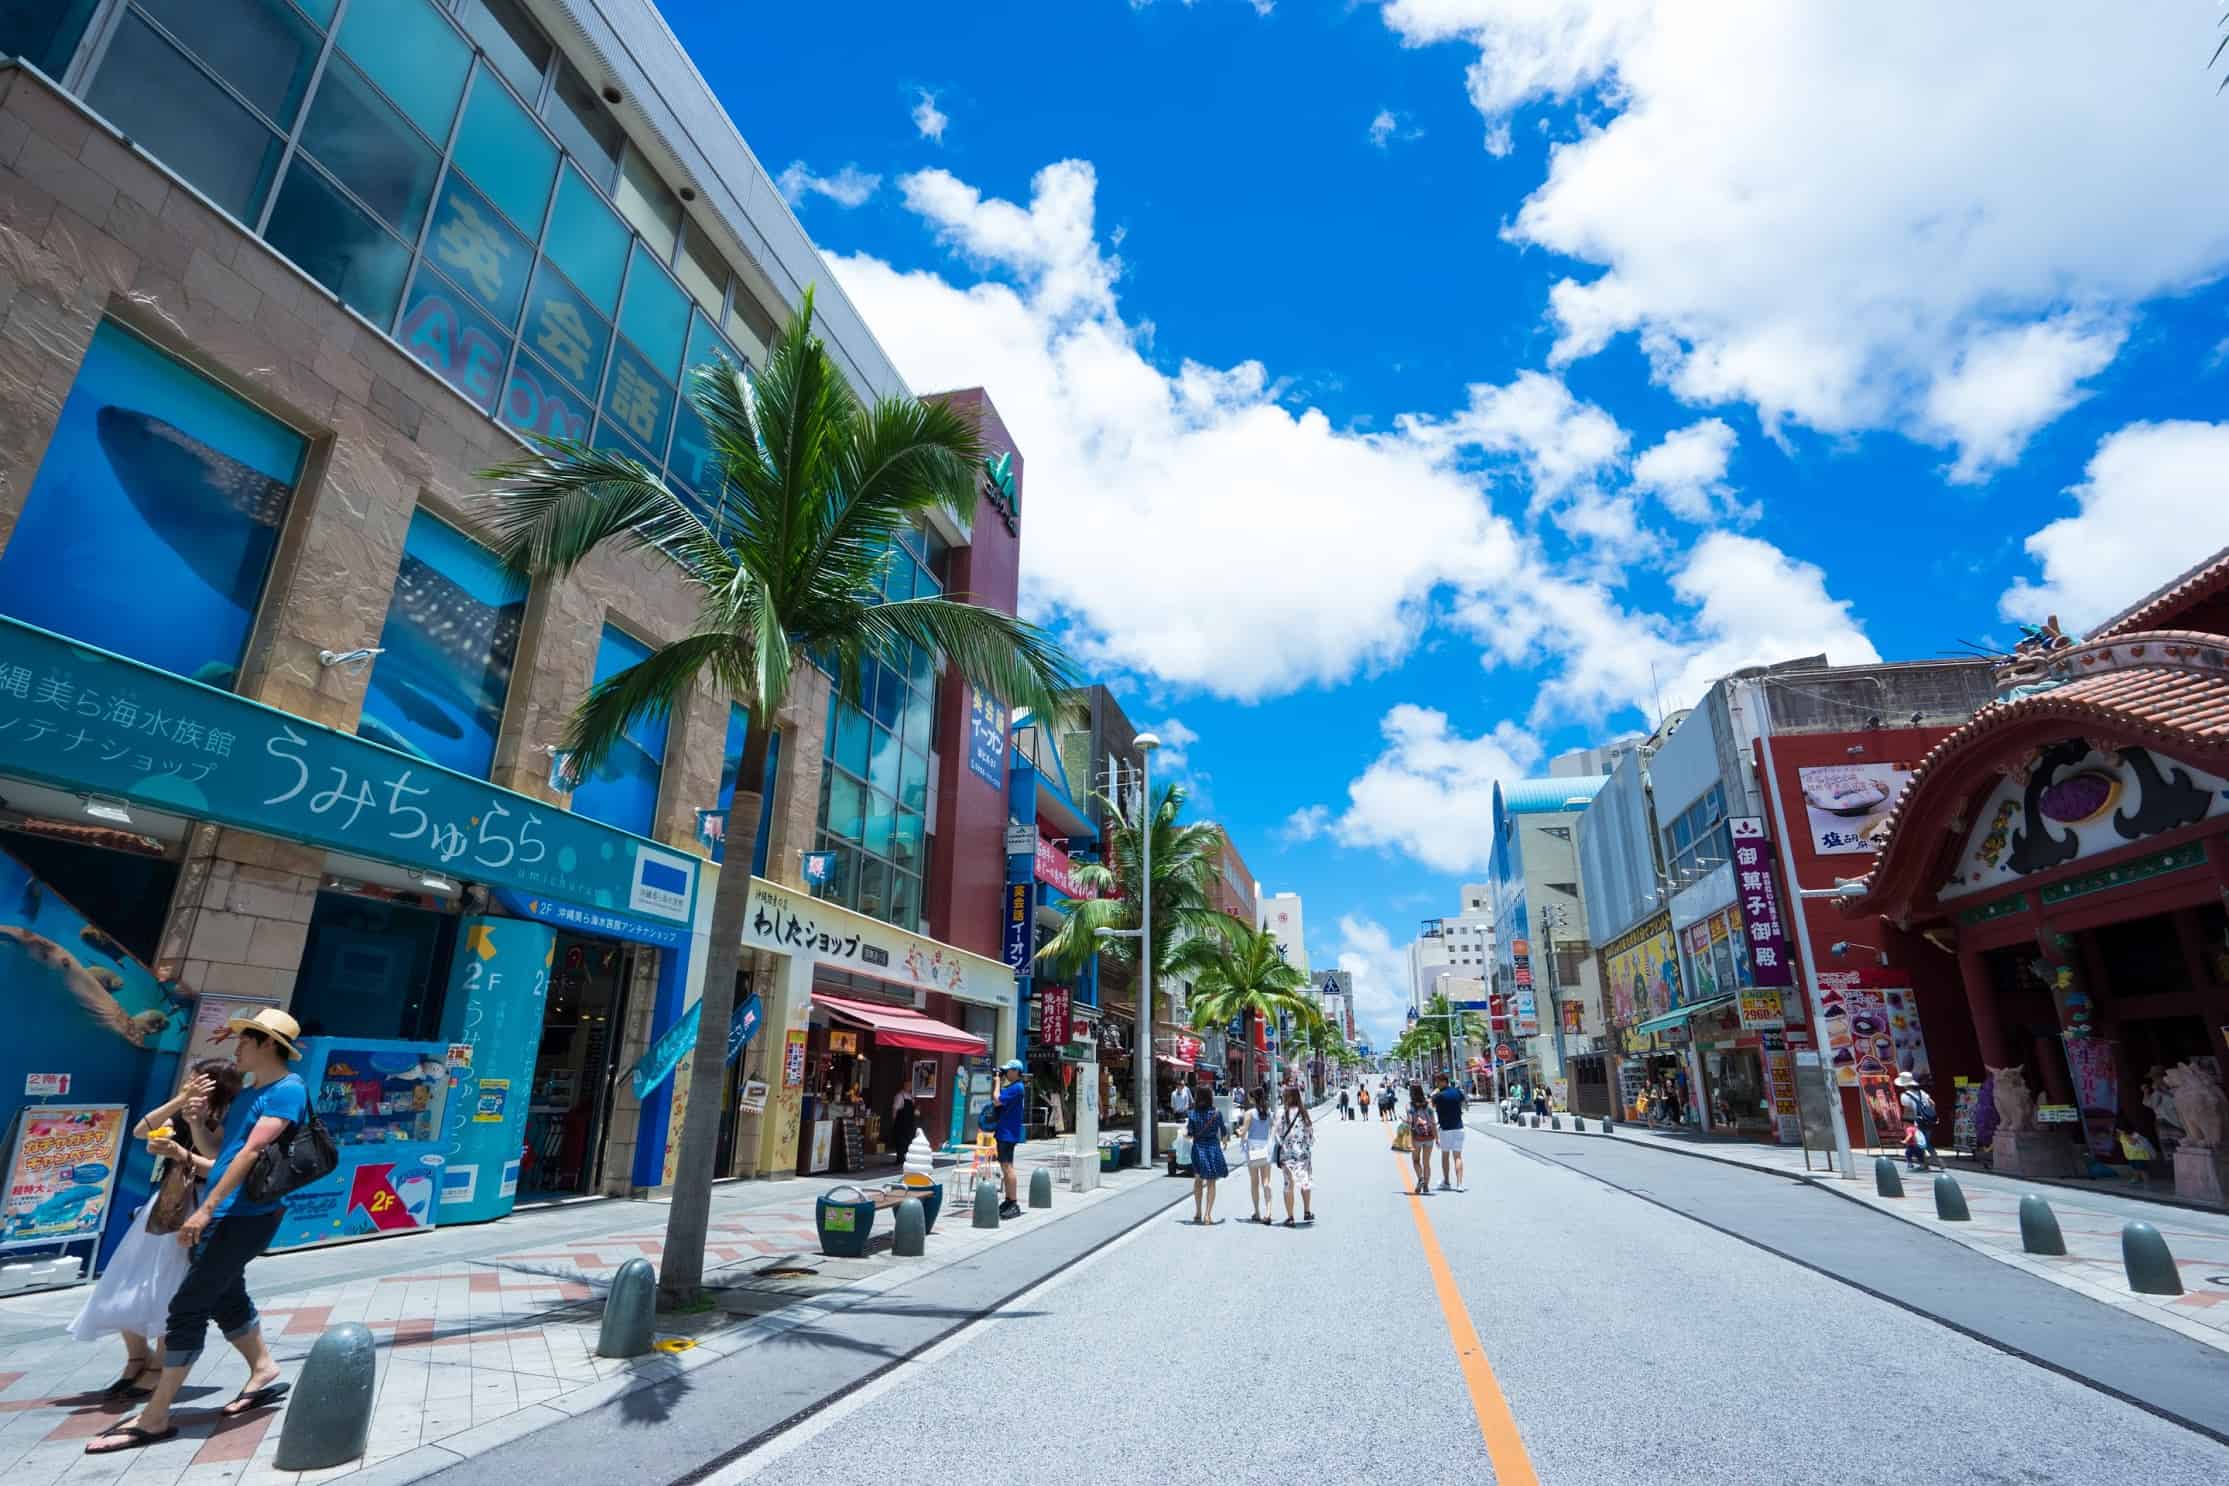 ที่โอกินาว่า (Okinawa) มี ถนนสายช็อปปิ้งโคคุไซโดริ (Kokusai-dori)